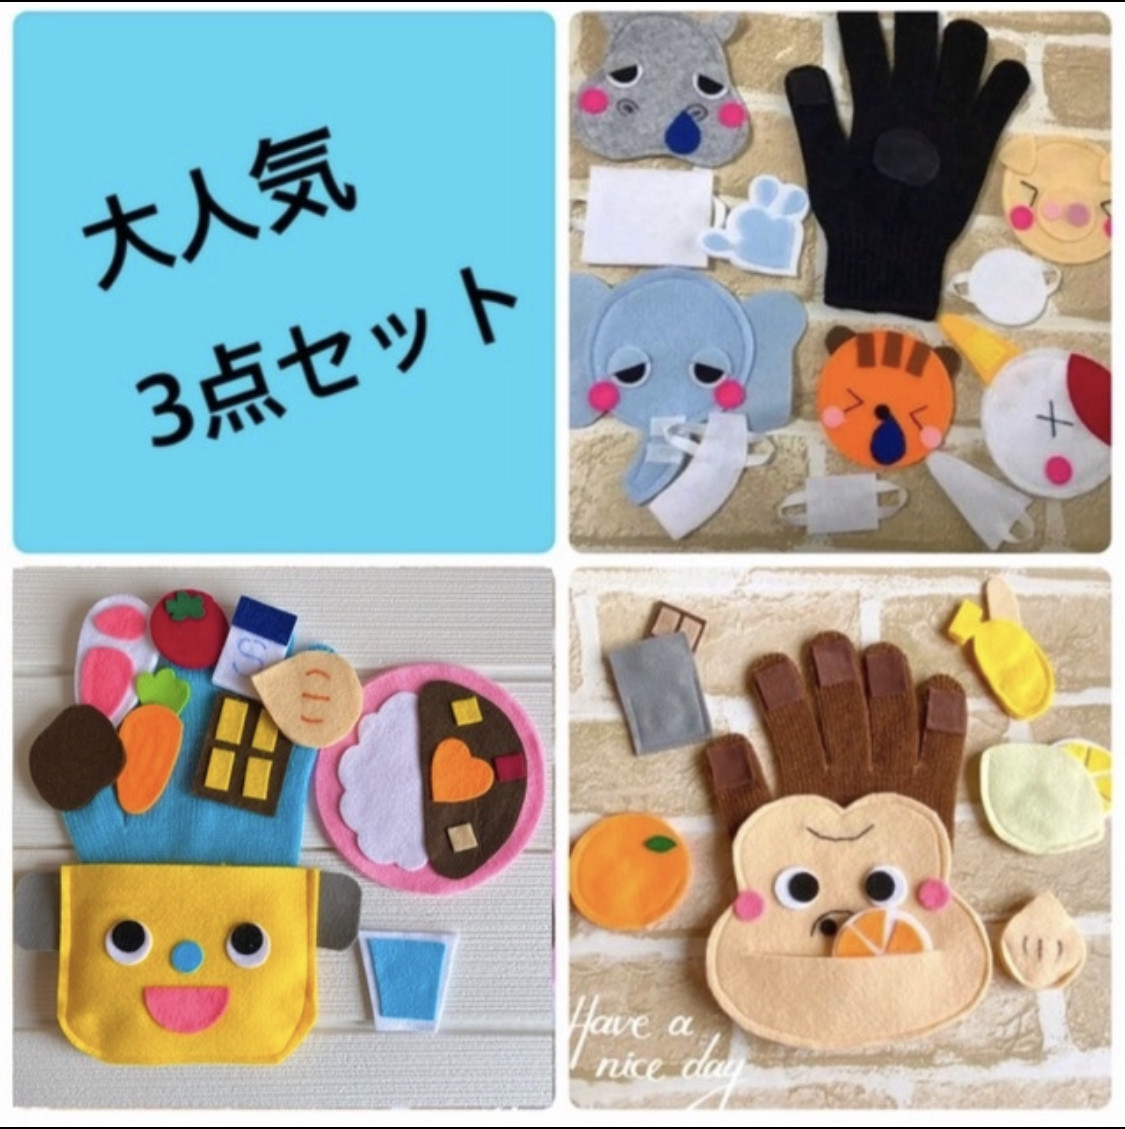 手袋シアター☆お買得3点セット☆セット割引 おもちゃ・人形 aoma 通販